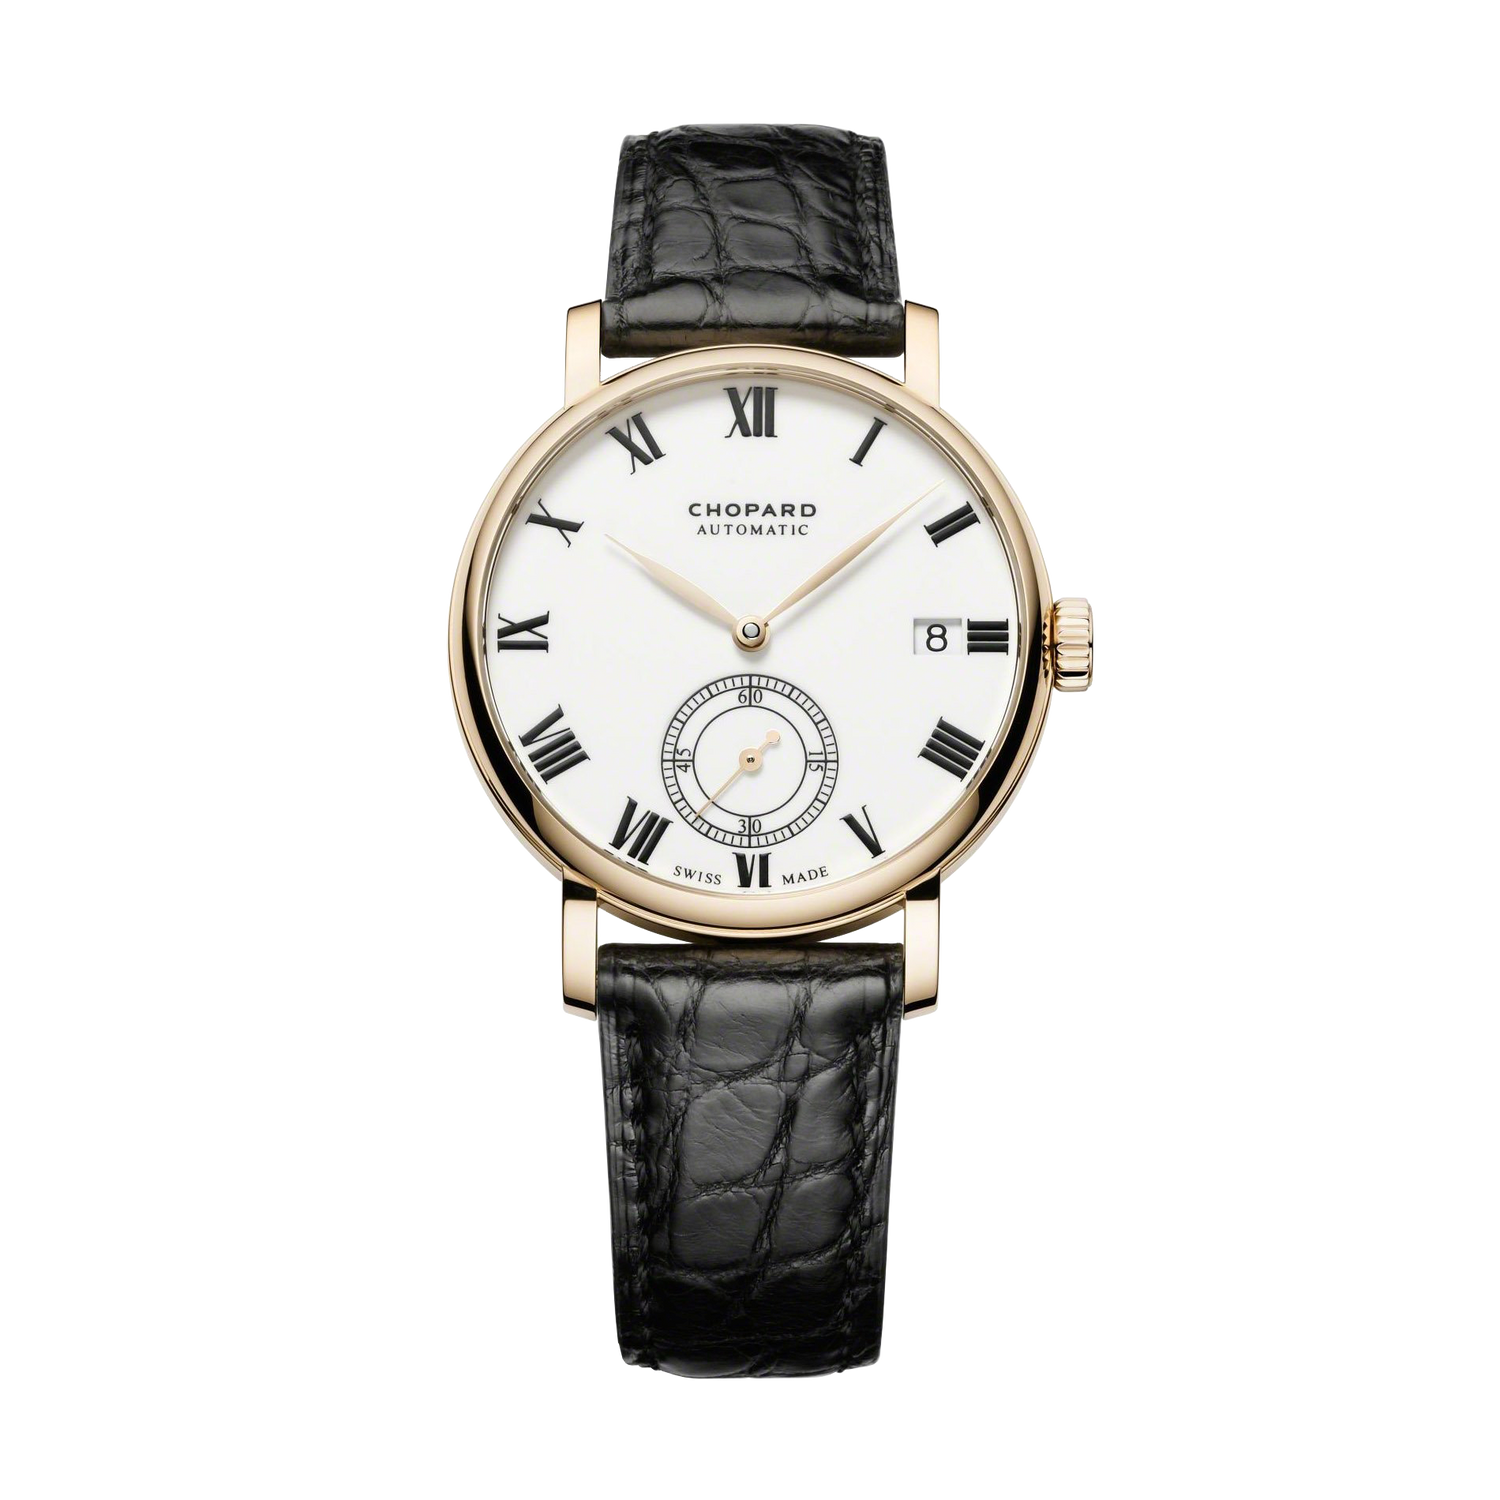 CHOPARD Classic Manufacture 18-carat Rose Gold Mens Watch 161289-5001